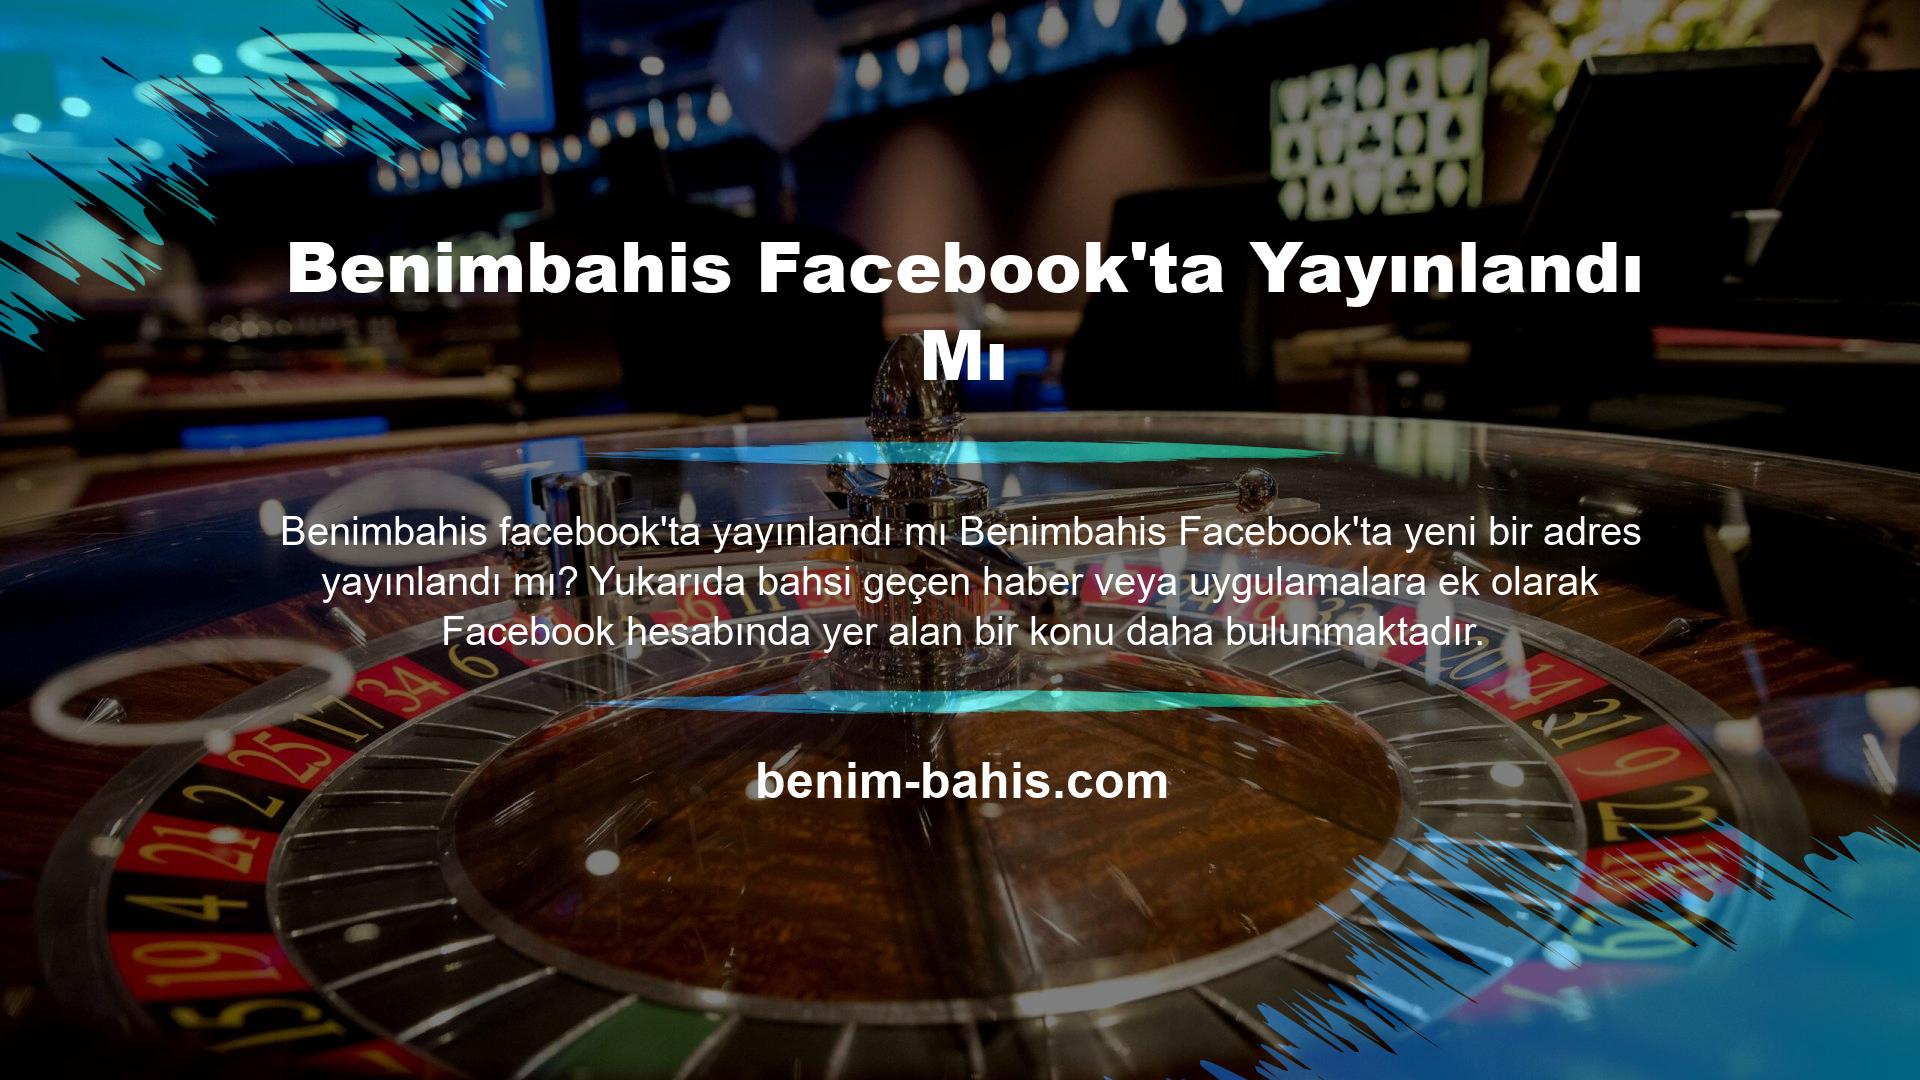 Yeni adres Benimbahis Facebook'ta yayınlandı mı? Evet, bu sitedeki tüm sosyal medya hesapları yeni bir giriş adresi belirtilmediği sürece paylaşılmaktadır